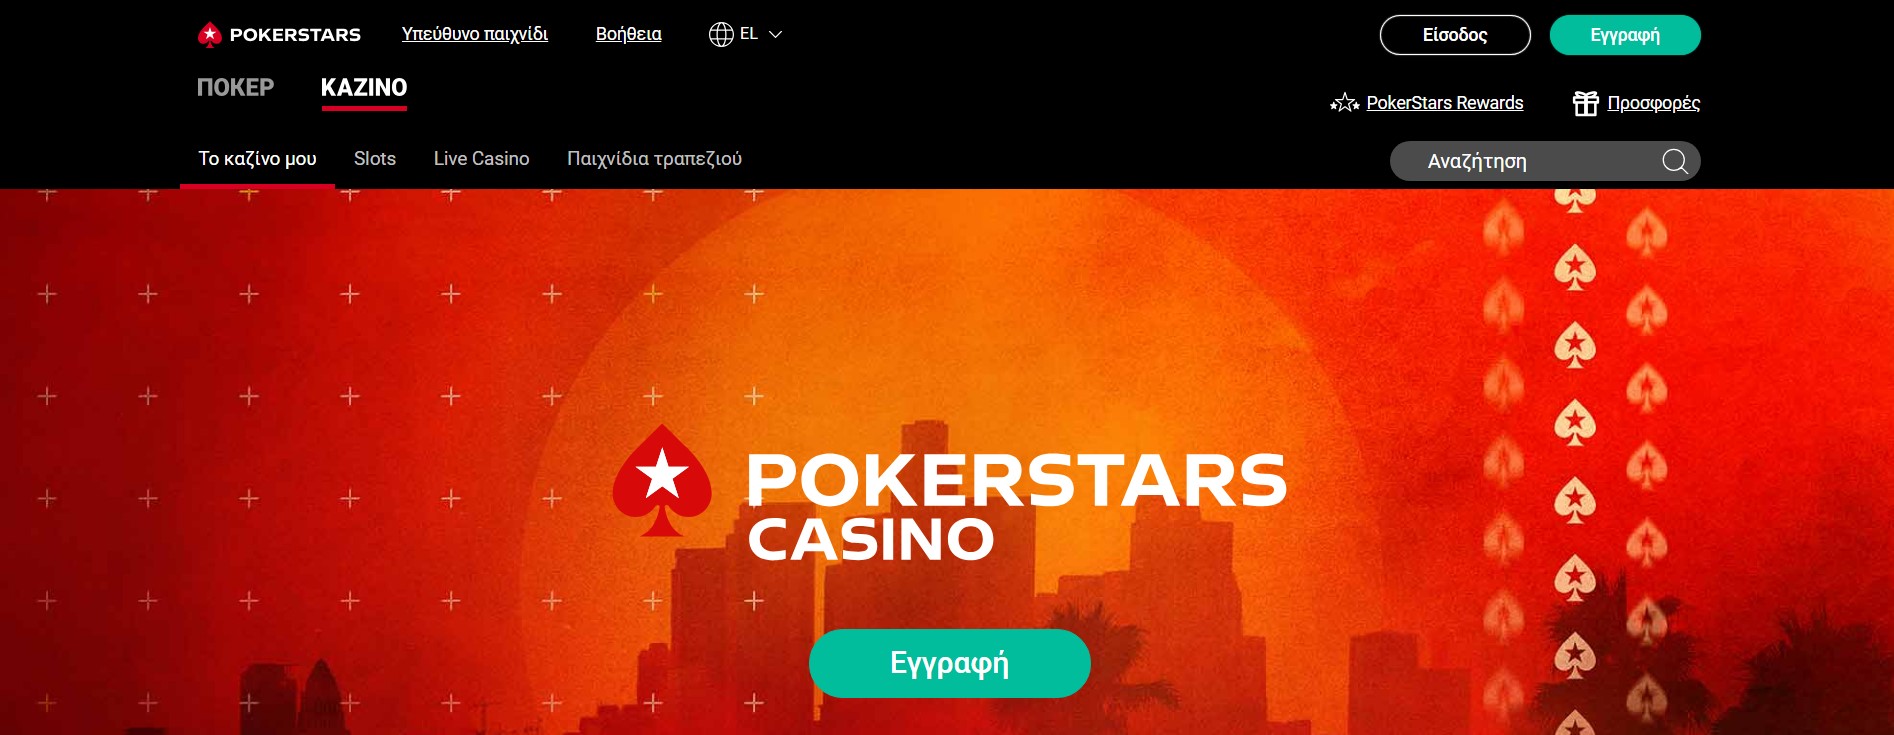 Μπόνους και προσφορές του Pokerstars Casino για παίκτες από την Ελλάδα